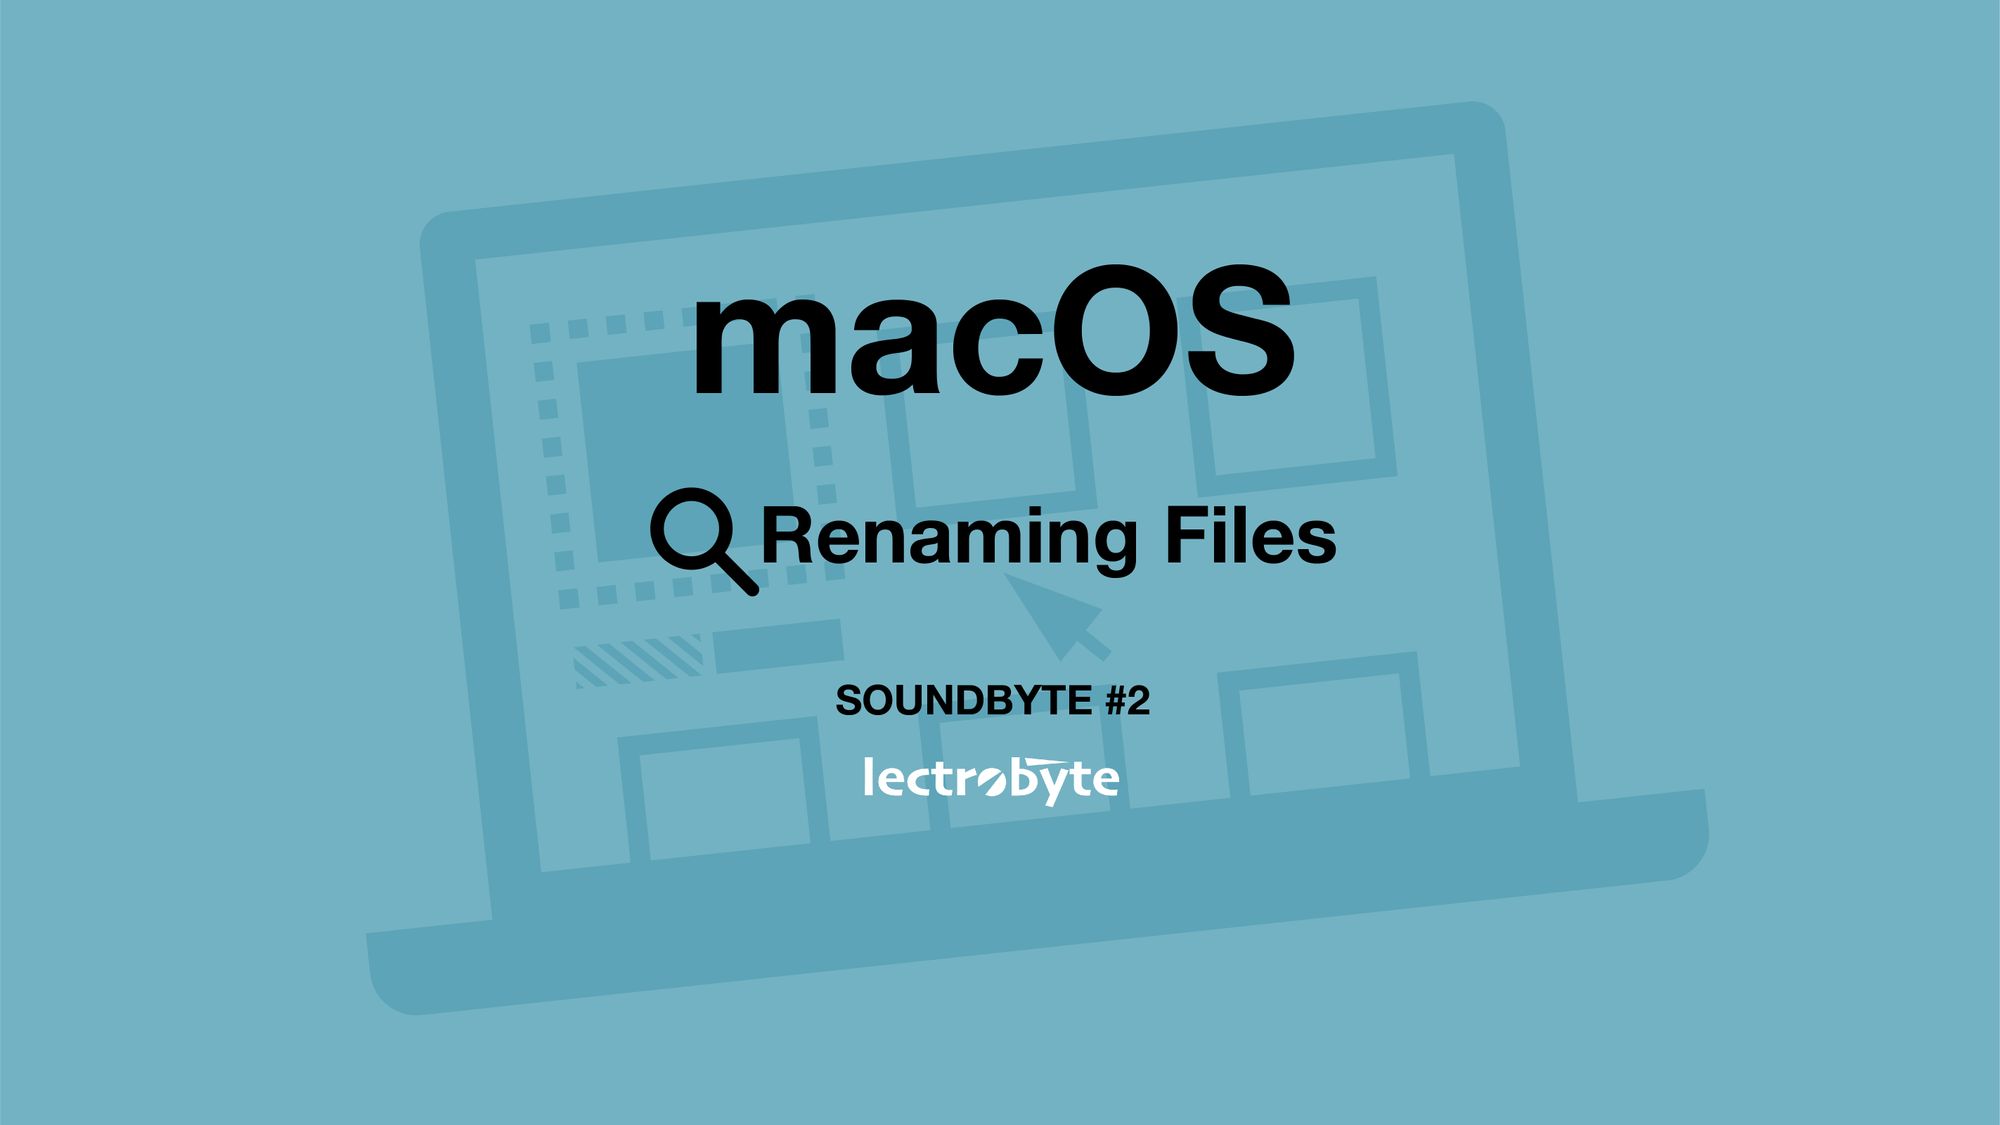 SOUNDBYTE #2 macOS Renaming Files artwork. Icon by Martin LEBRETON @ The Noun Project.